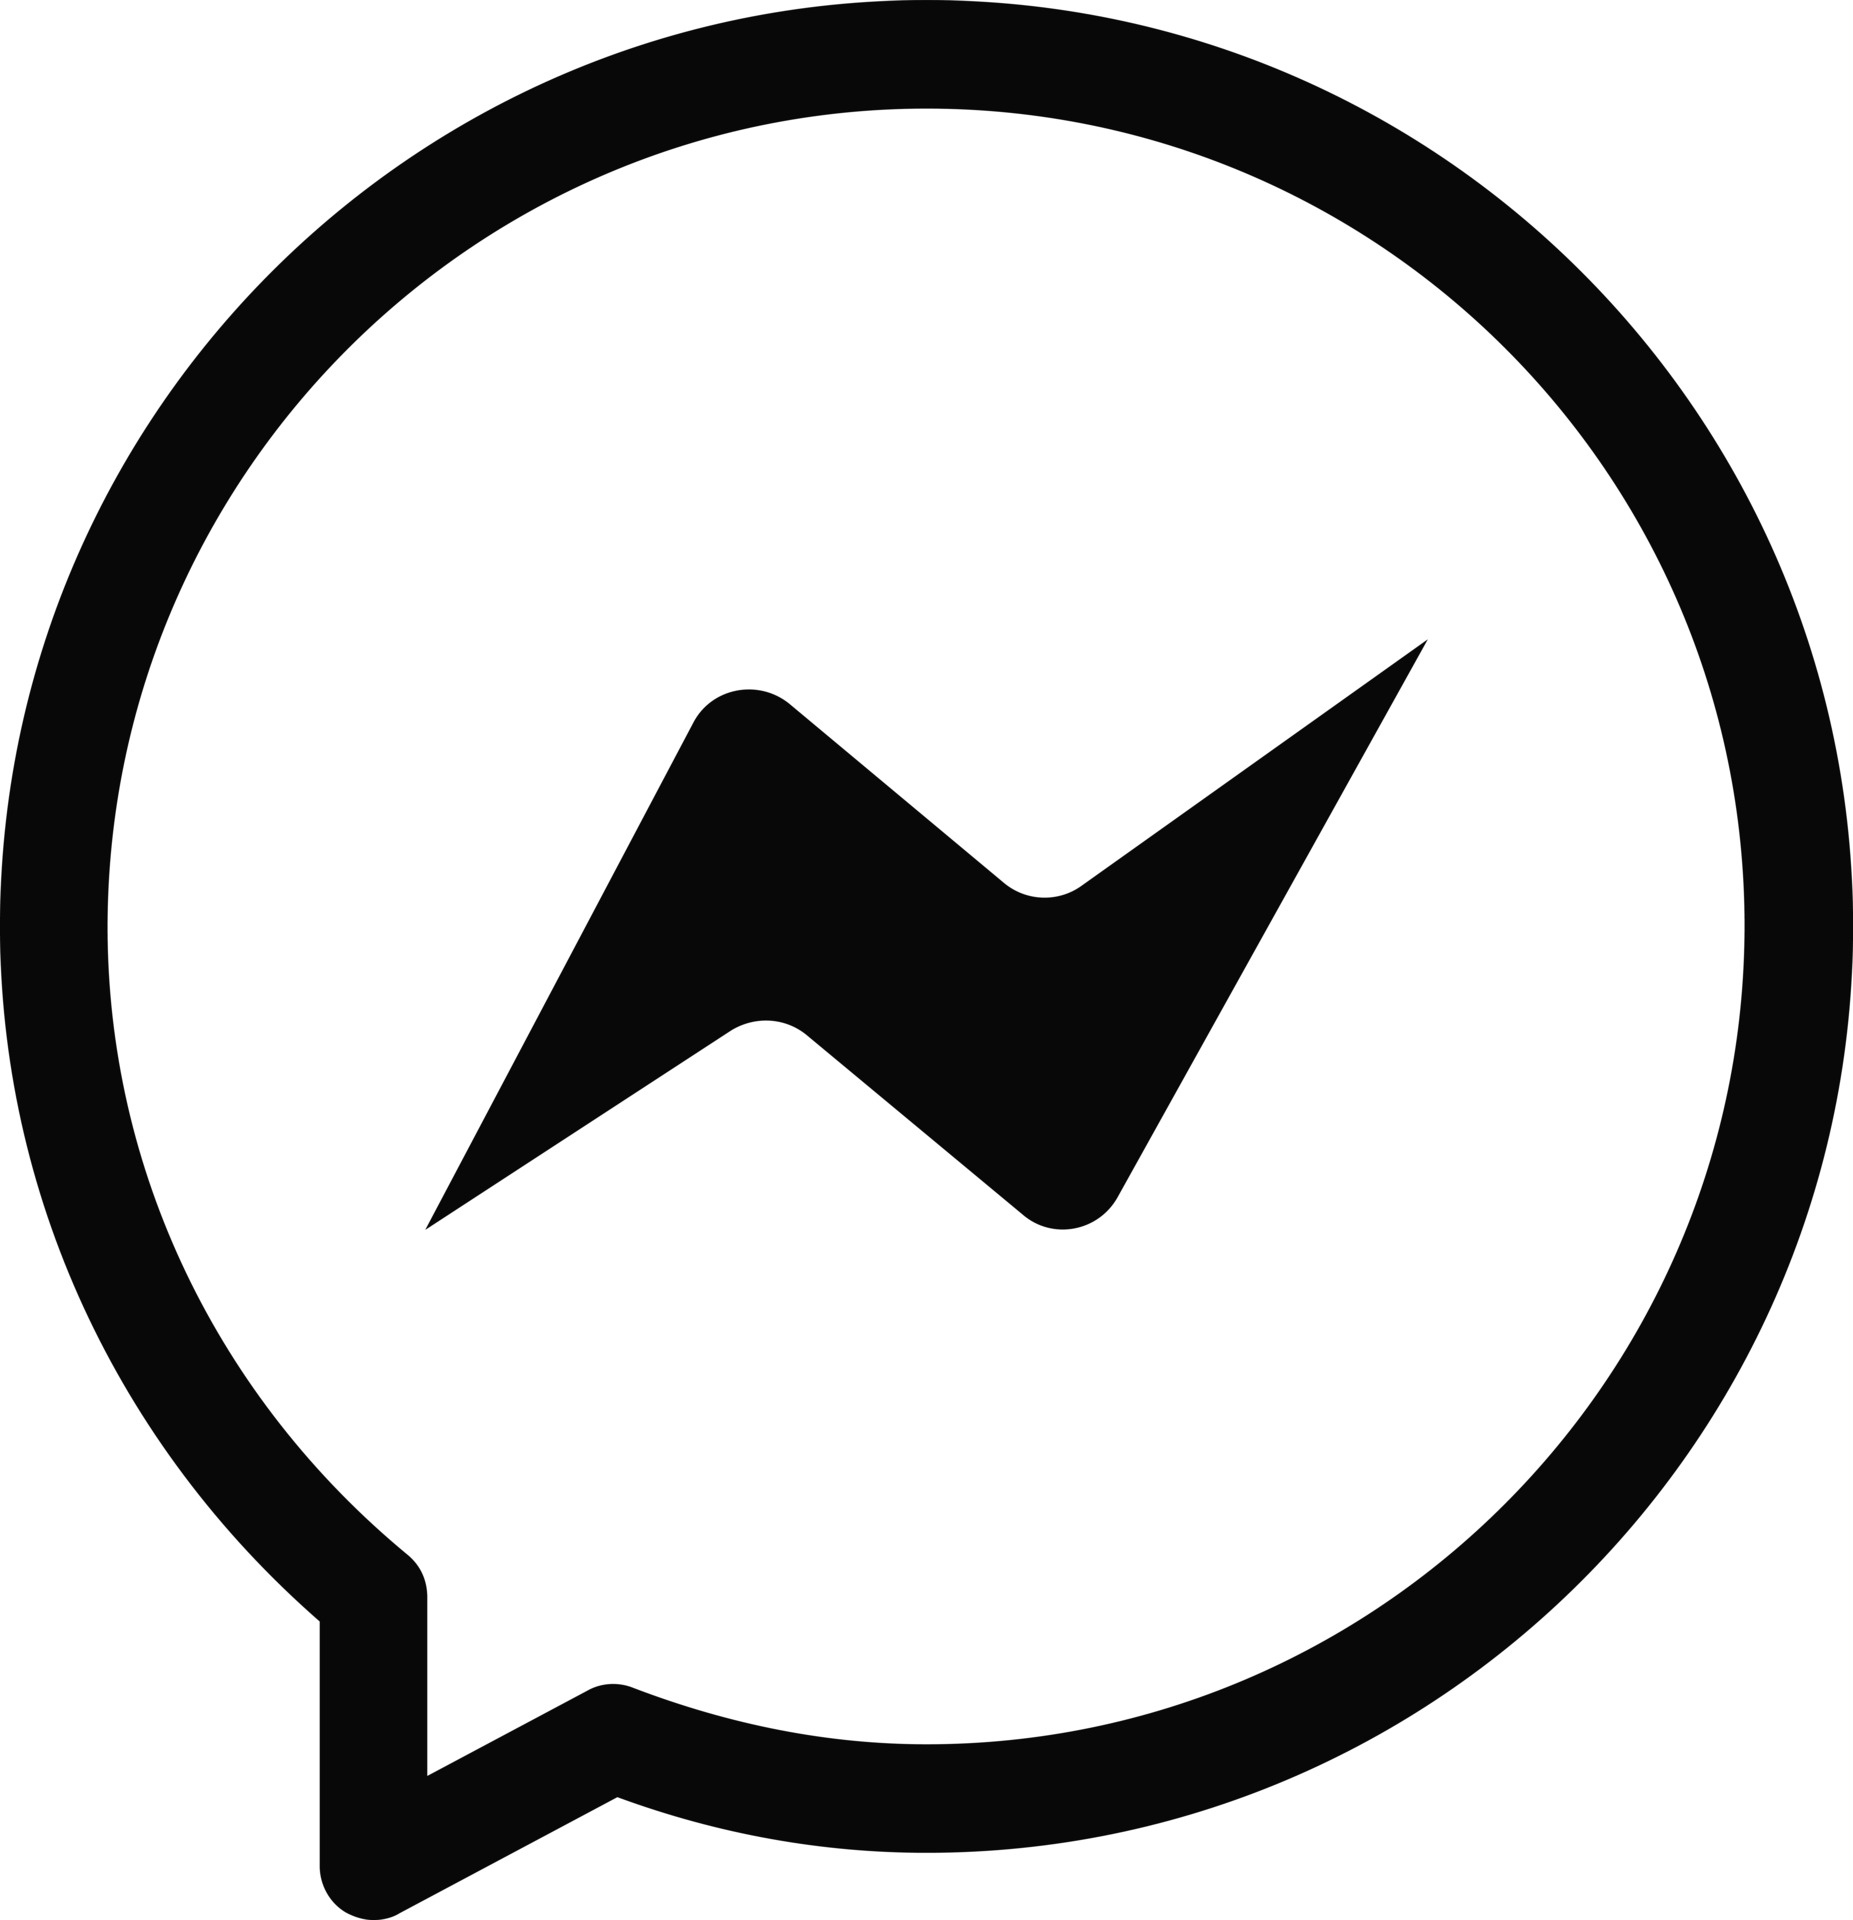 Bilde av en Messenger-ikon som representerer Facebooks meldingstjeneste, ofte brukt for å sende tekstmeldinger, bilder, og videoer til venner og familie